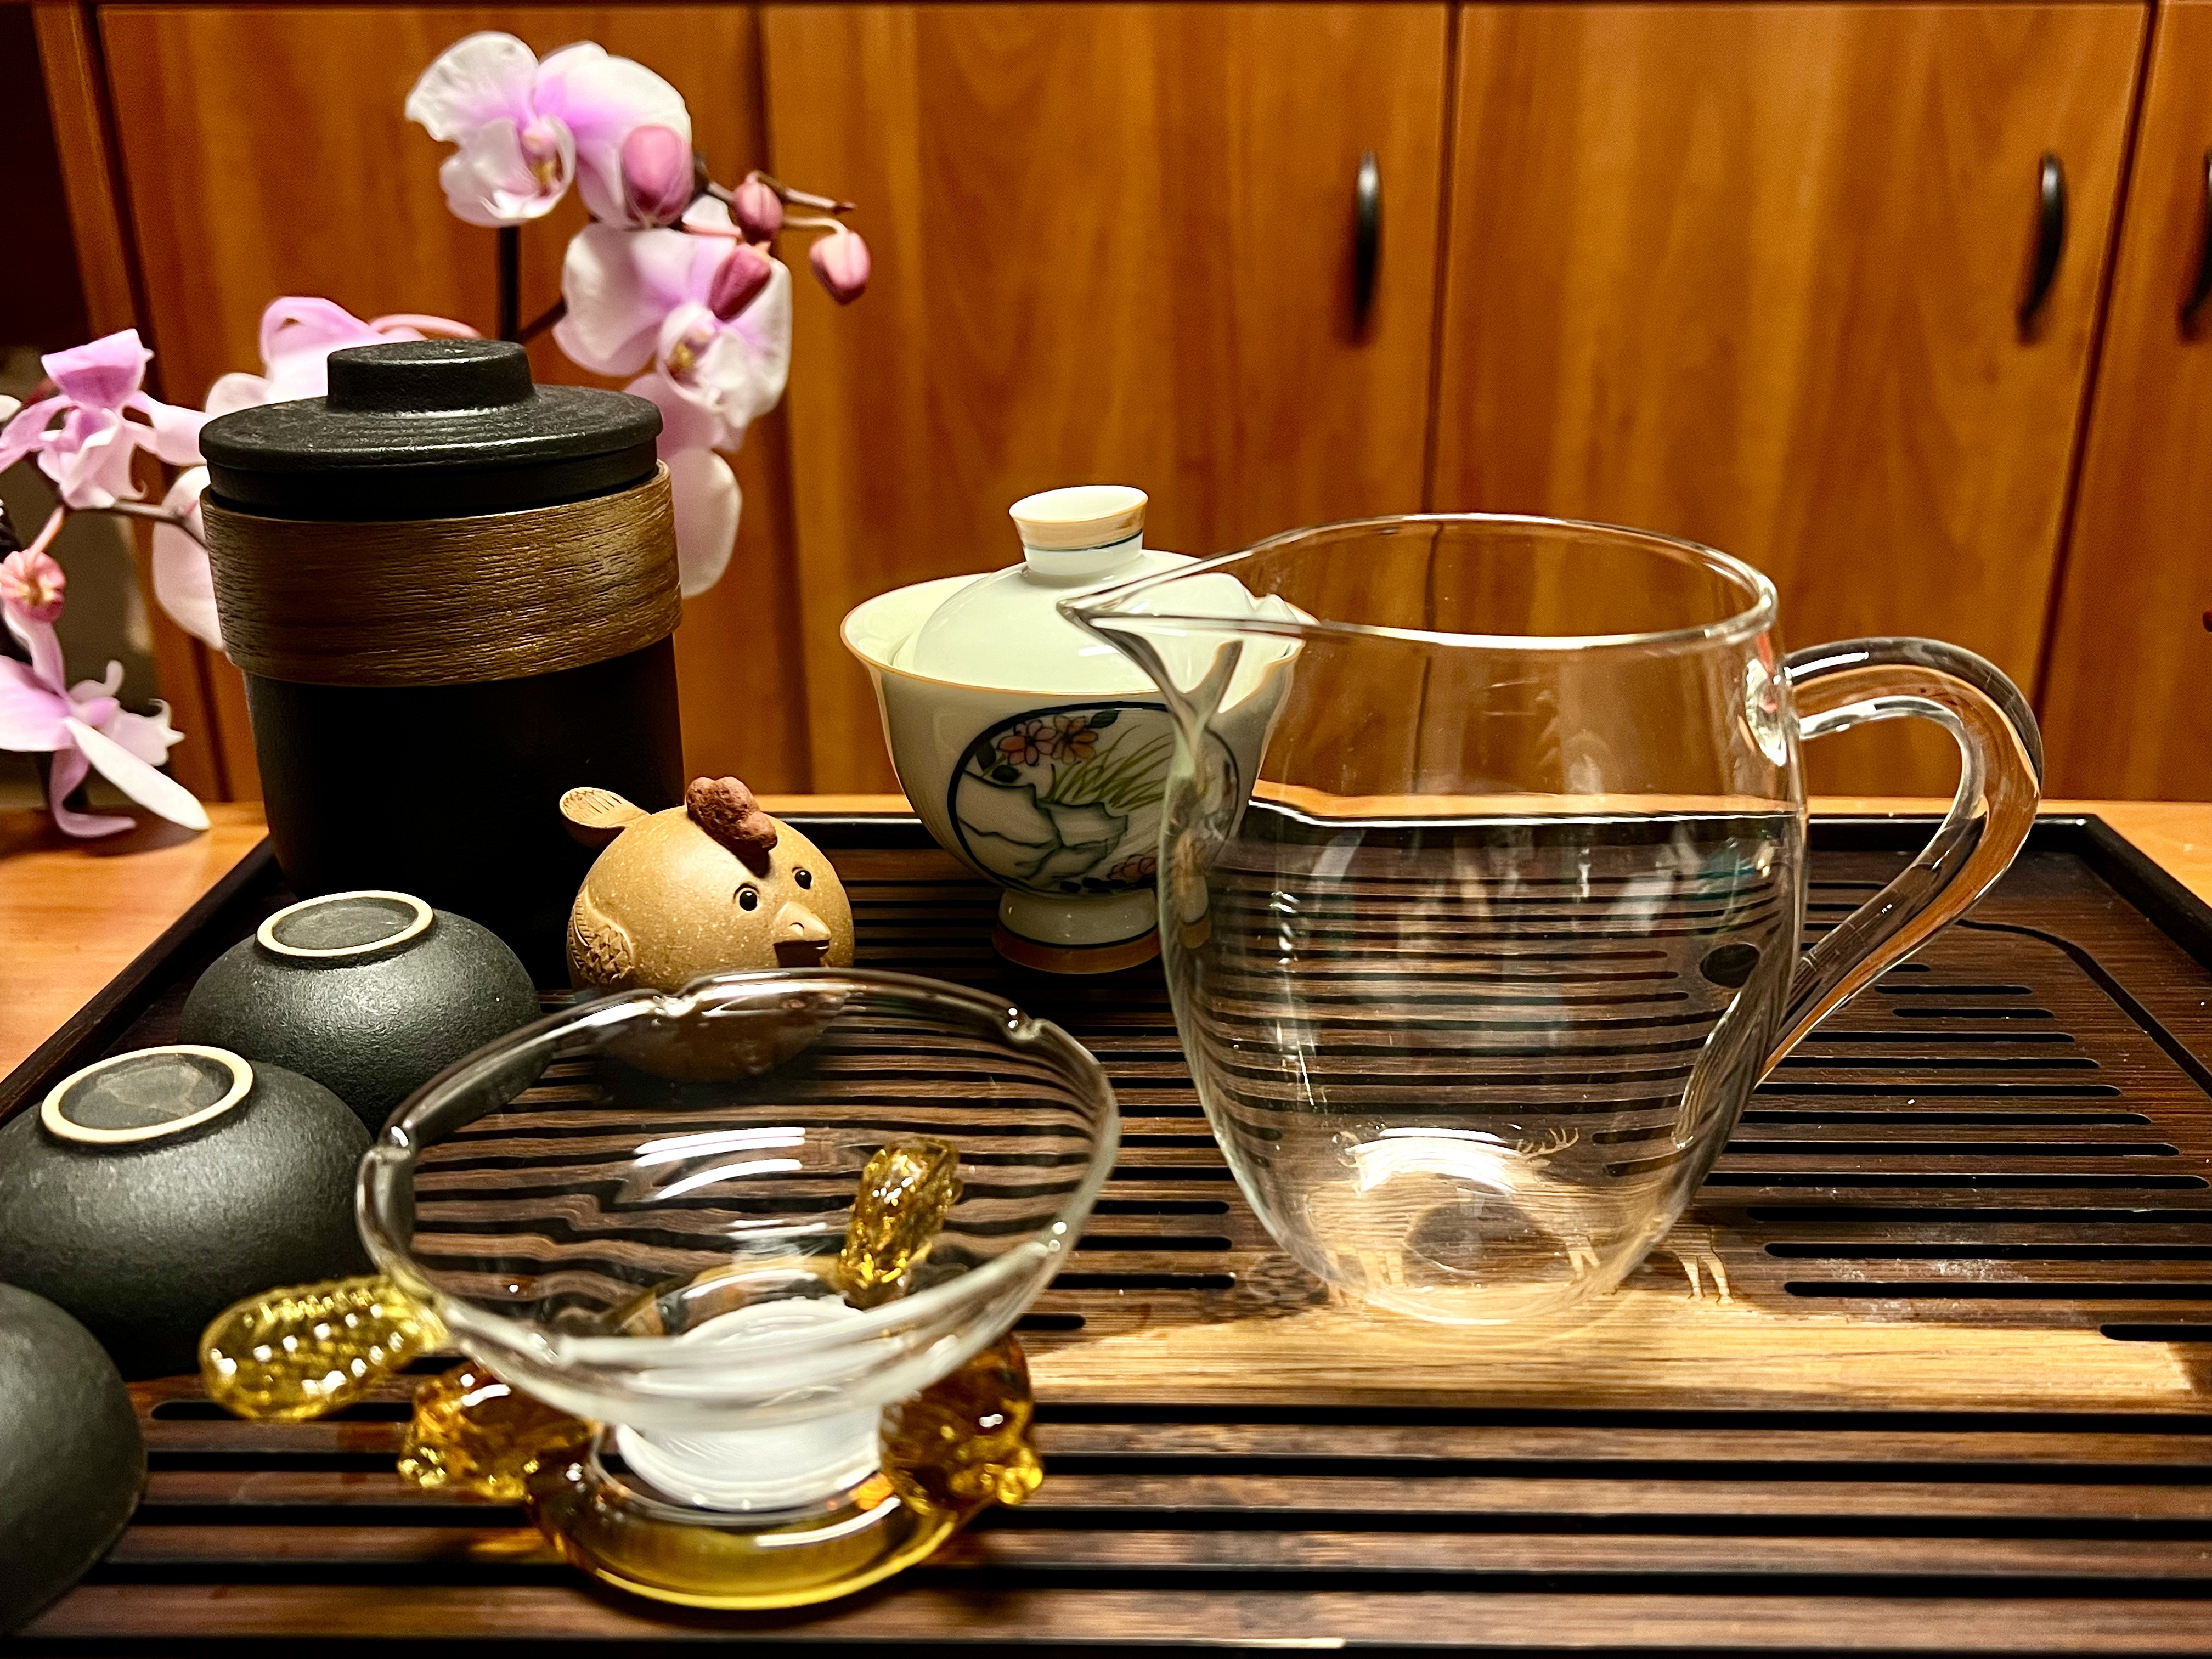 Fan Liyun's tea-drinking utensils. /courtesy of Fan Liyun